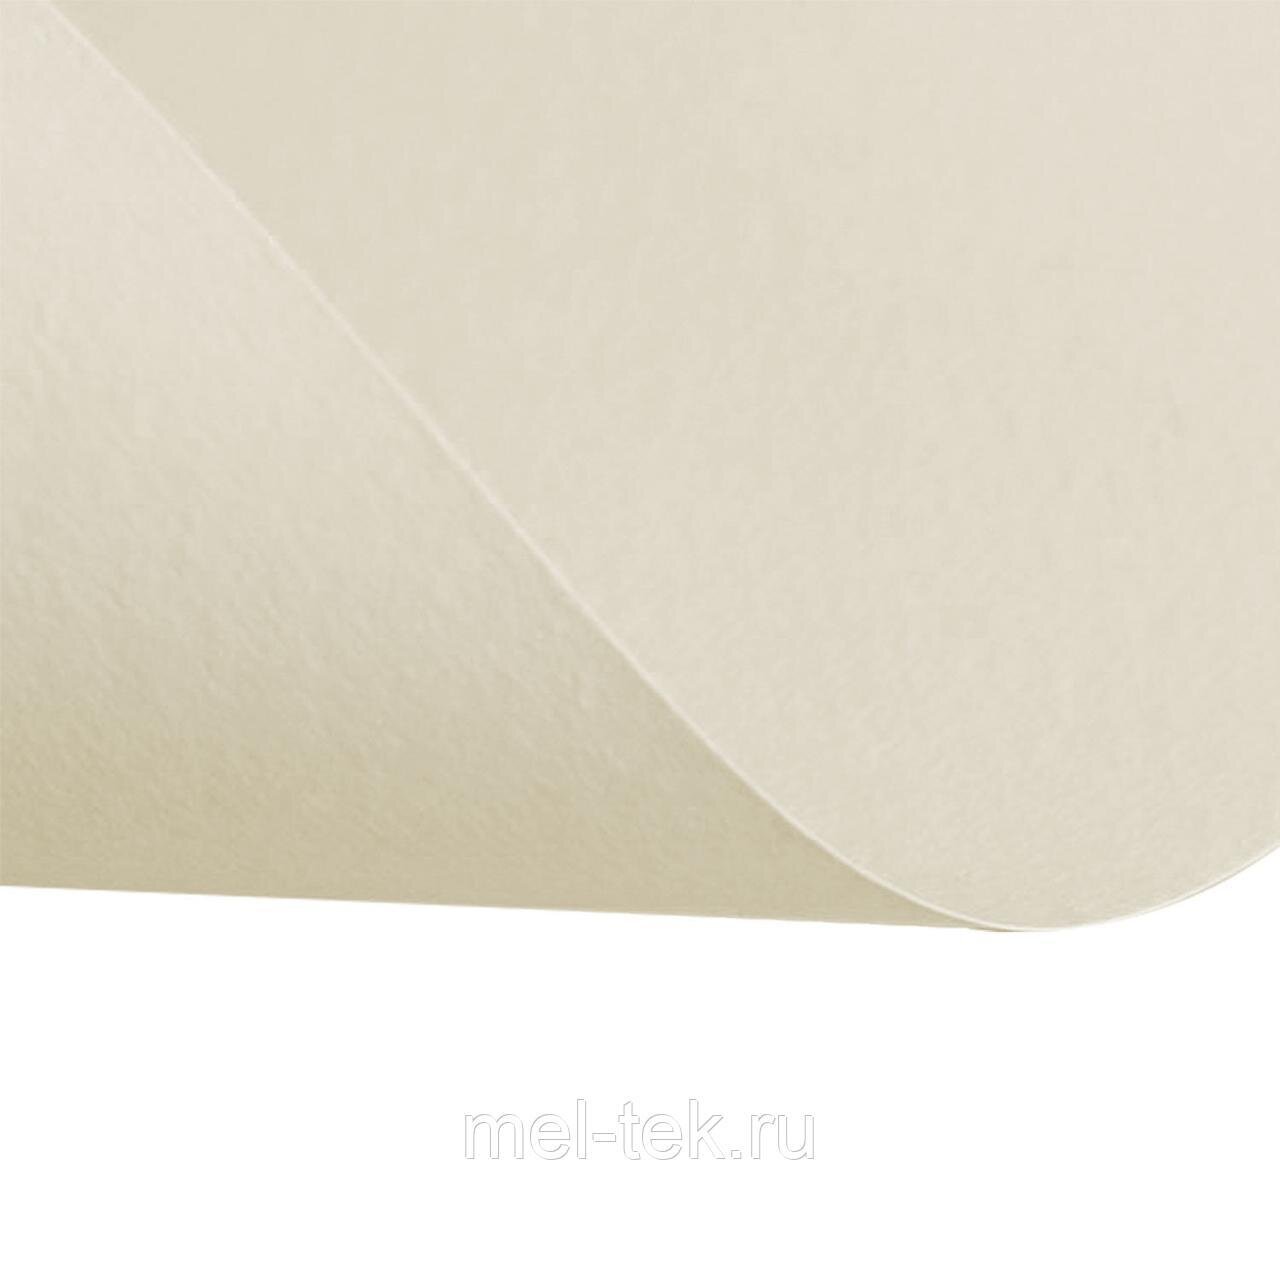 Бумага для пастели (1 лист) FABRIANO Tiziano А2+ (500х650 мм), 160 г/м2, бледно-кремовый.